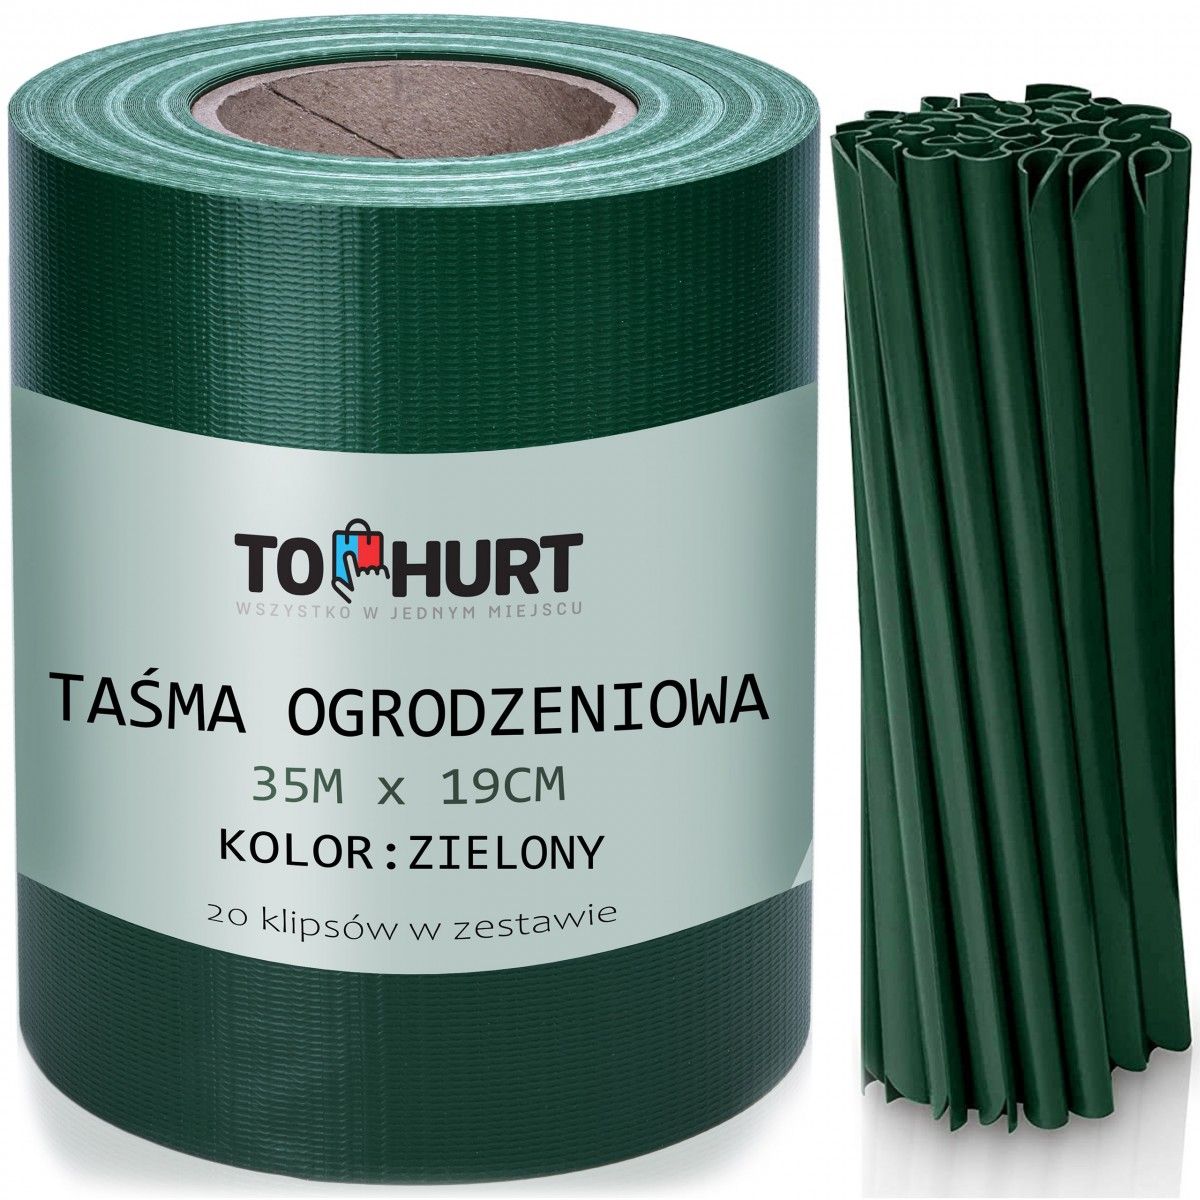 TZB Plotová páska 19 cm x 35 m zelená - Houseland.cz